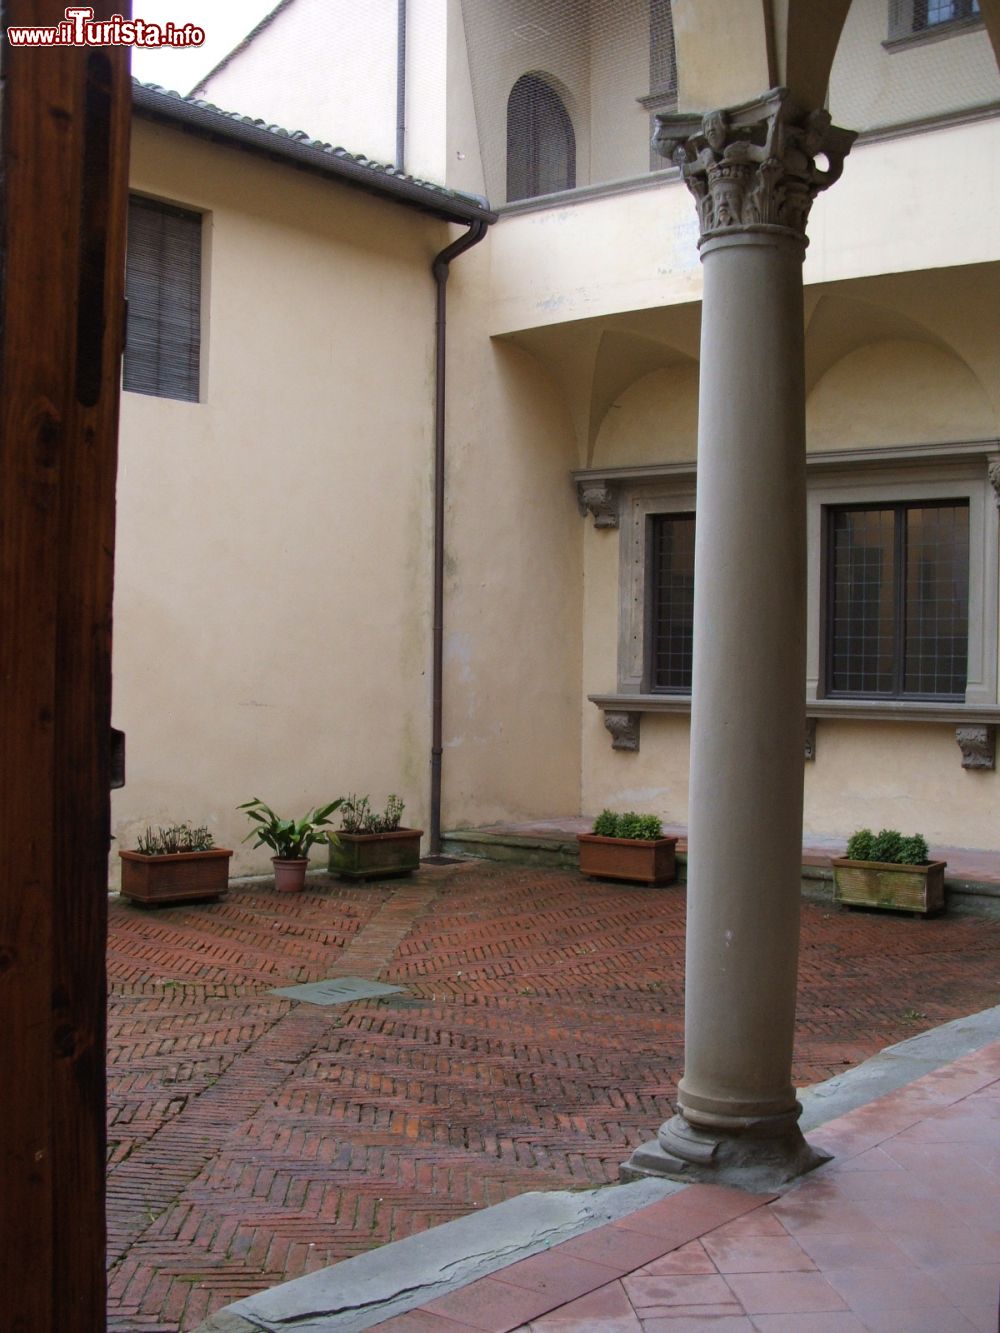 Immagine Arezzo: il cortile della Casa di Francesco Petrarca, nel centro storico della città.